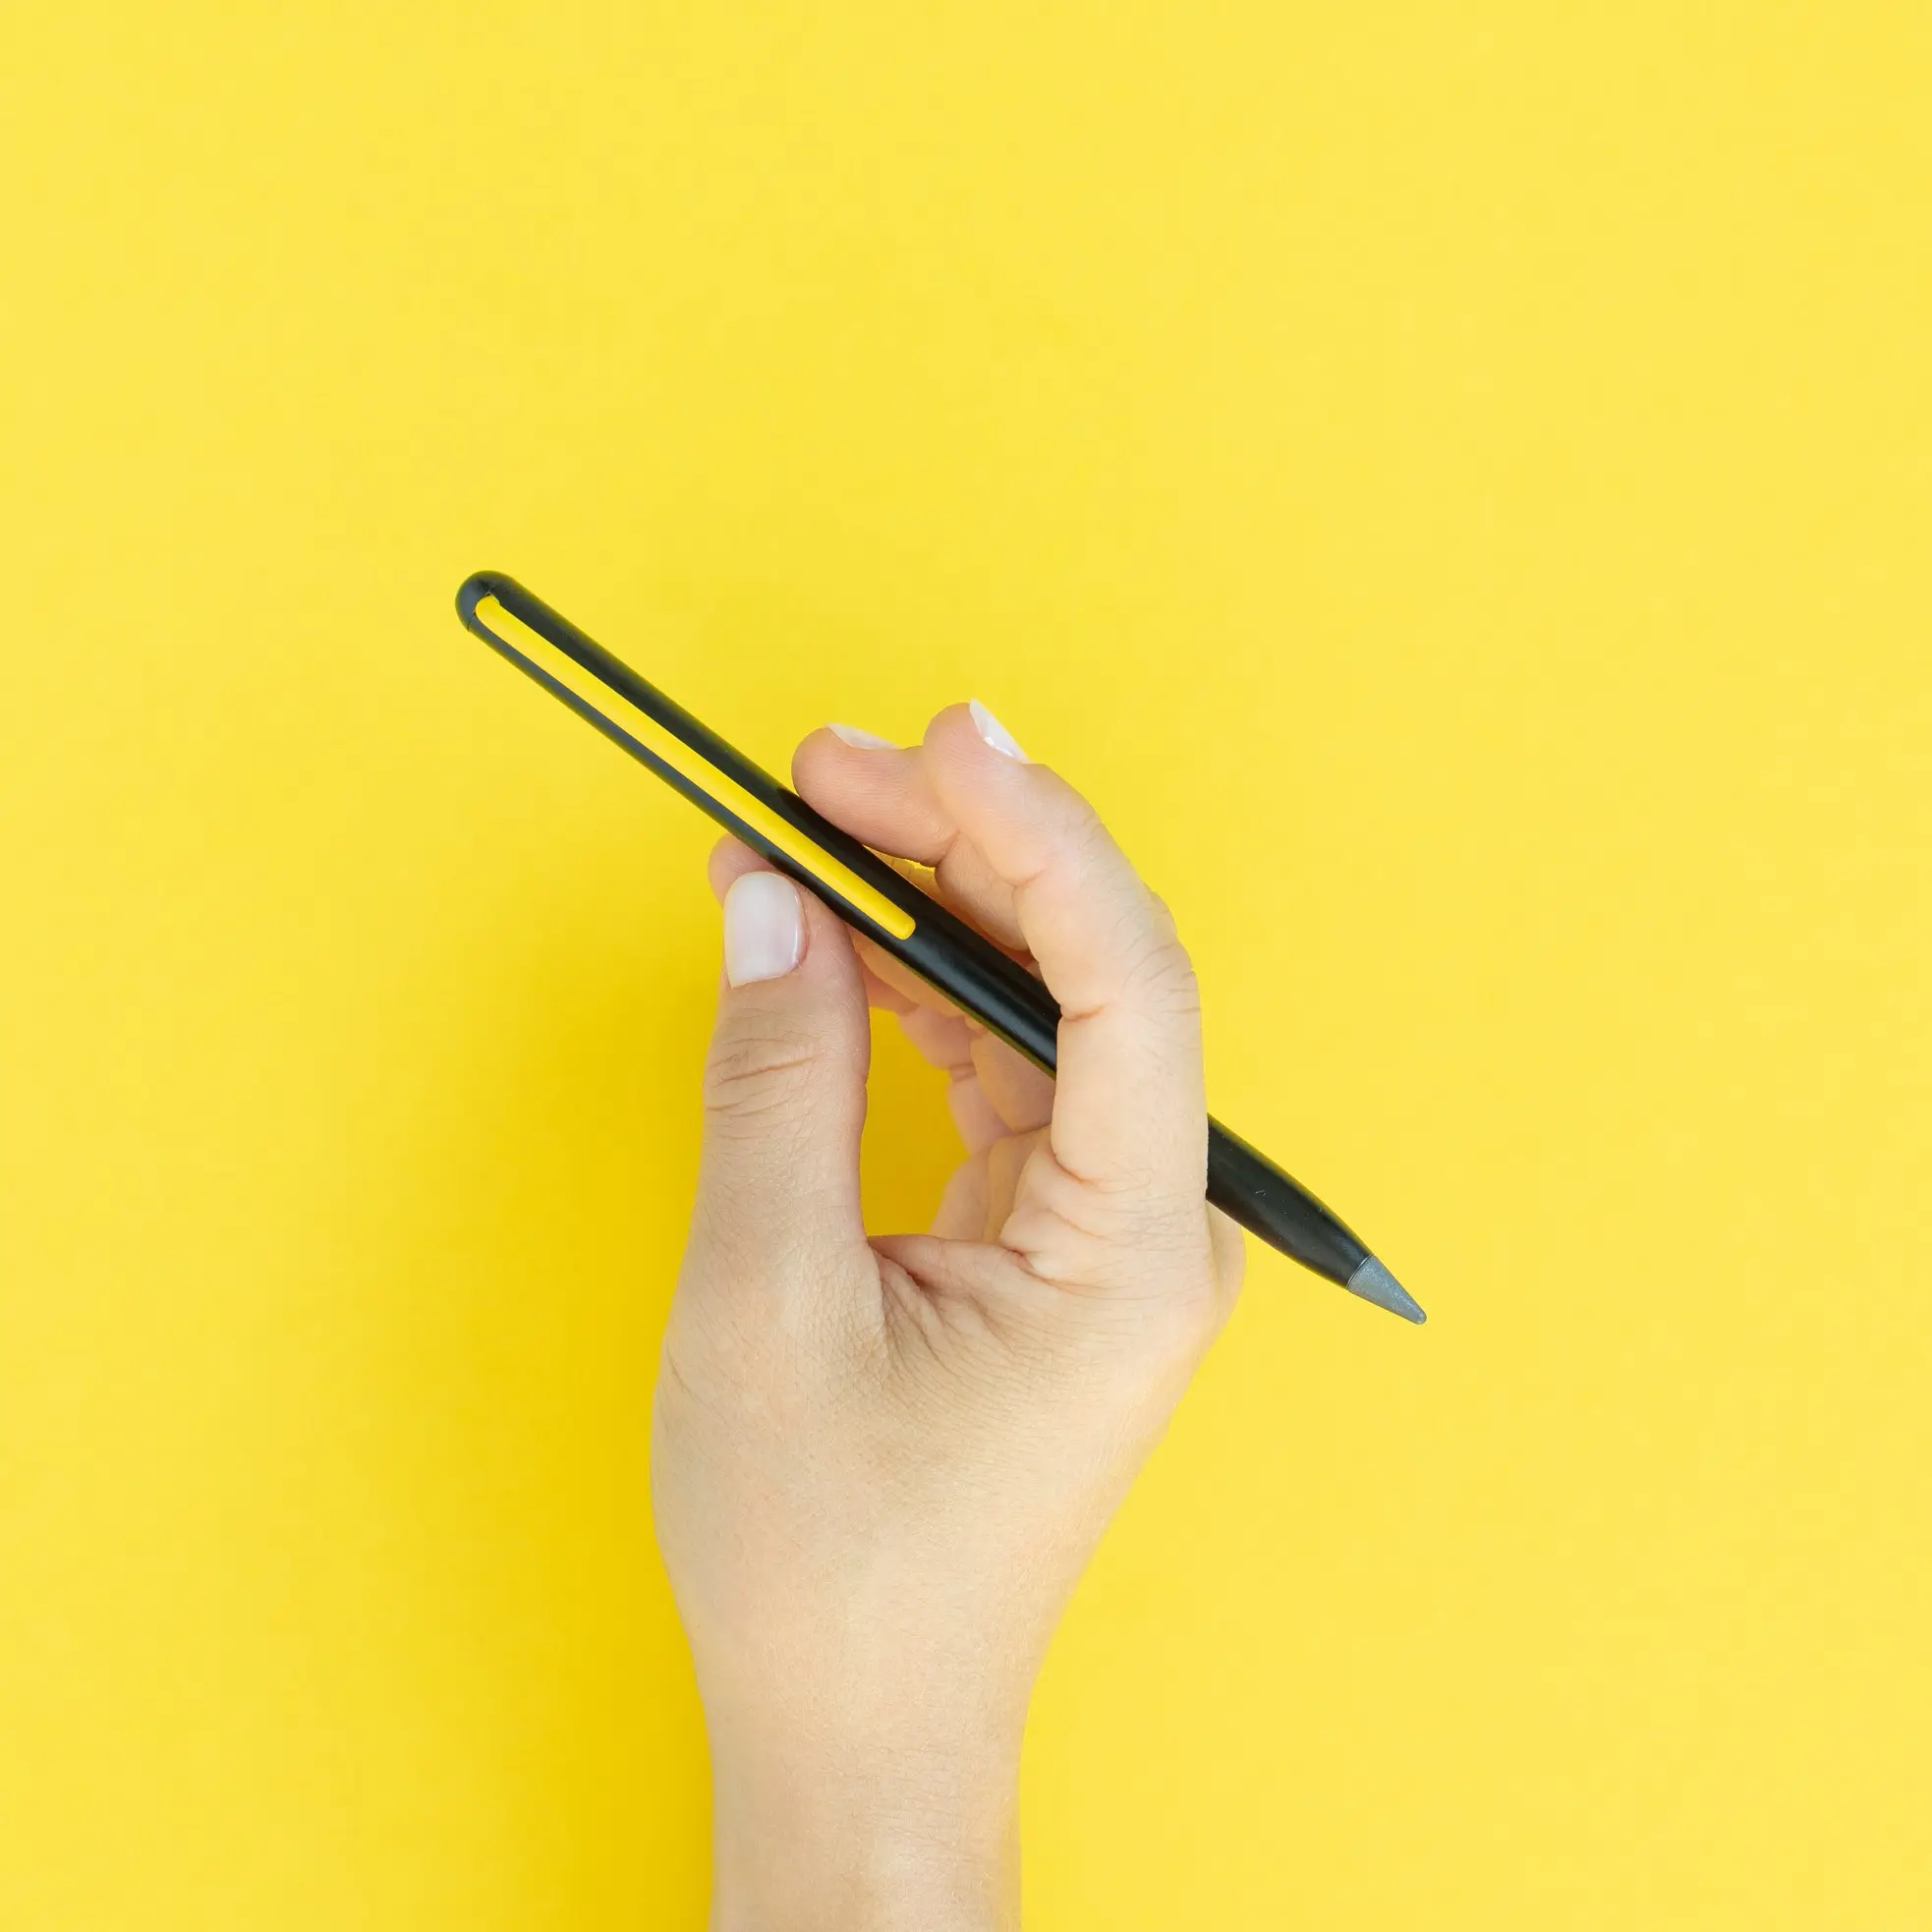 ดินสอ Grafeex ทำในประเทศอิตาลีพร้อมคลิปสีเหลืองคูลและโลโก้ที่กำหนดเองเหมาะสำหรับเป็นของขวัญส่งเสริมการขาย